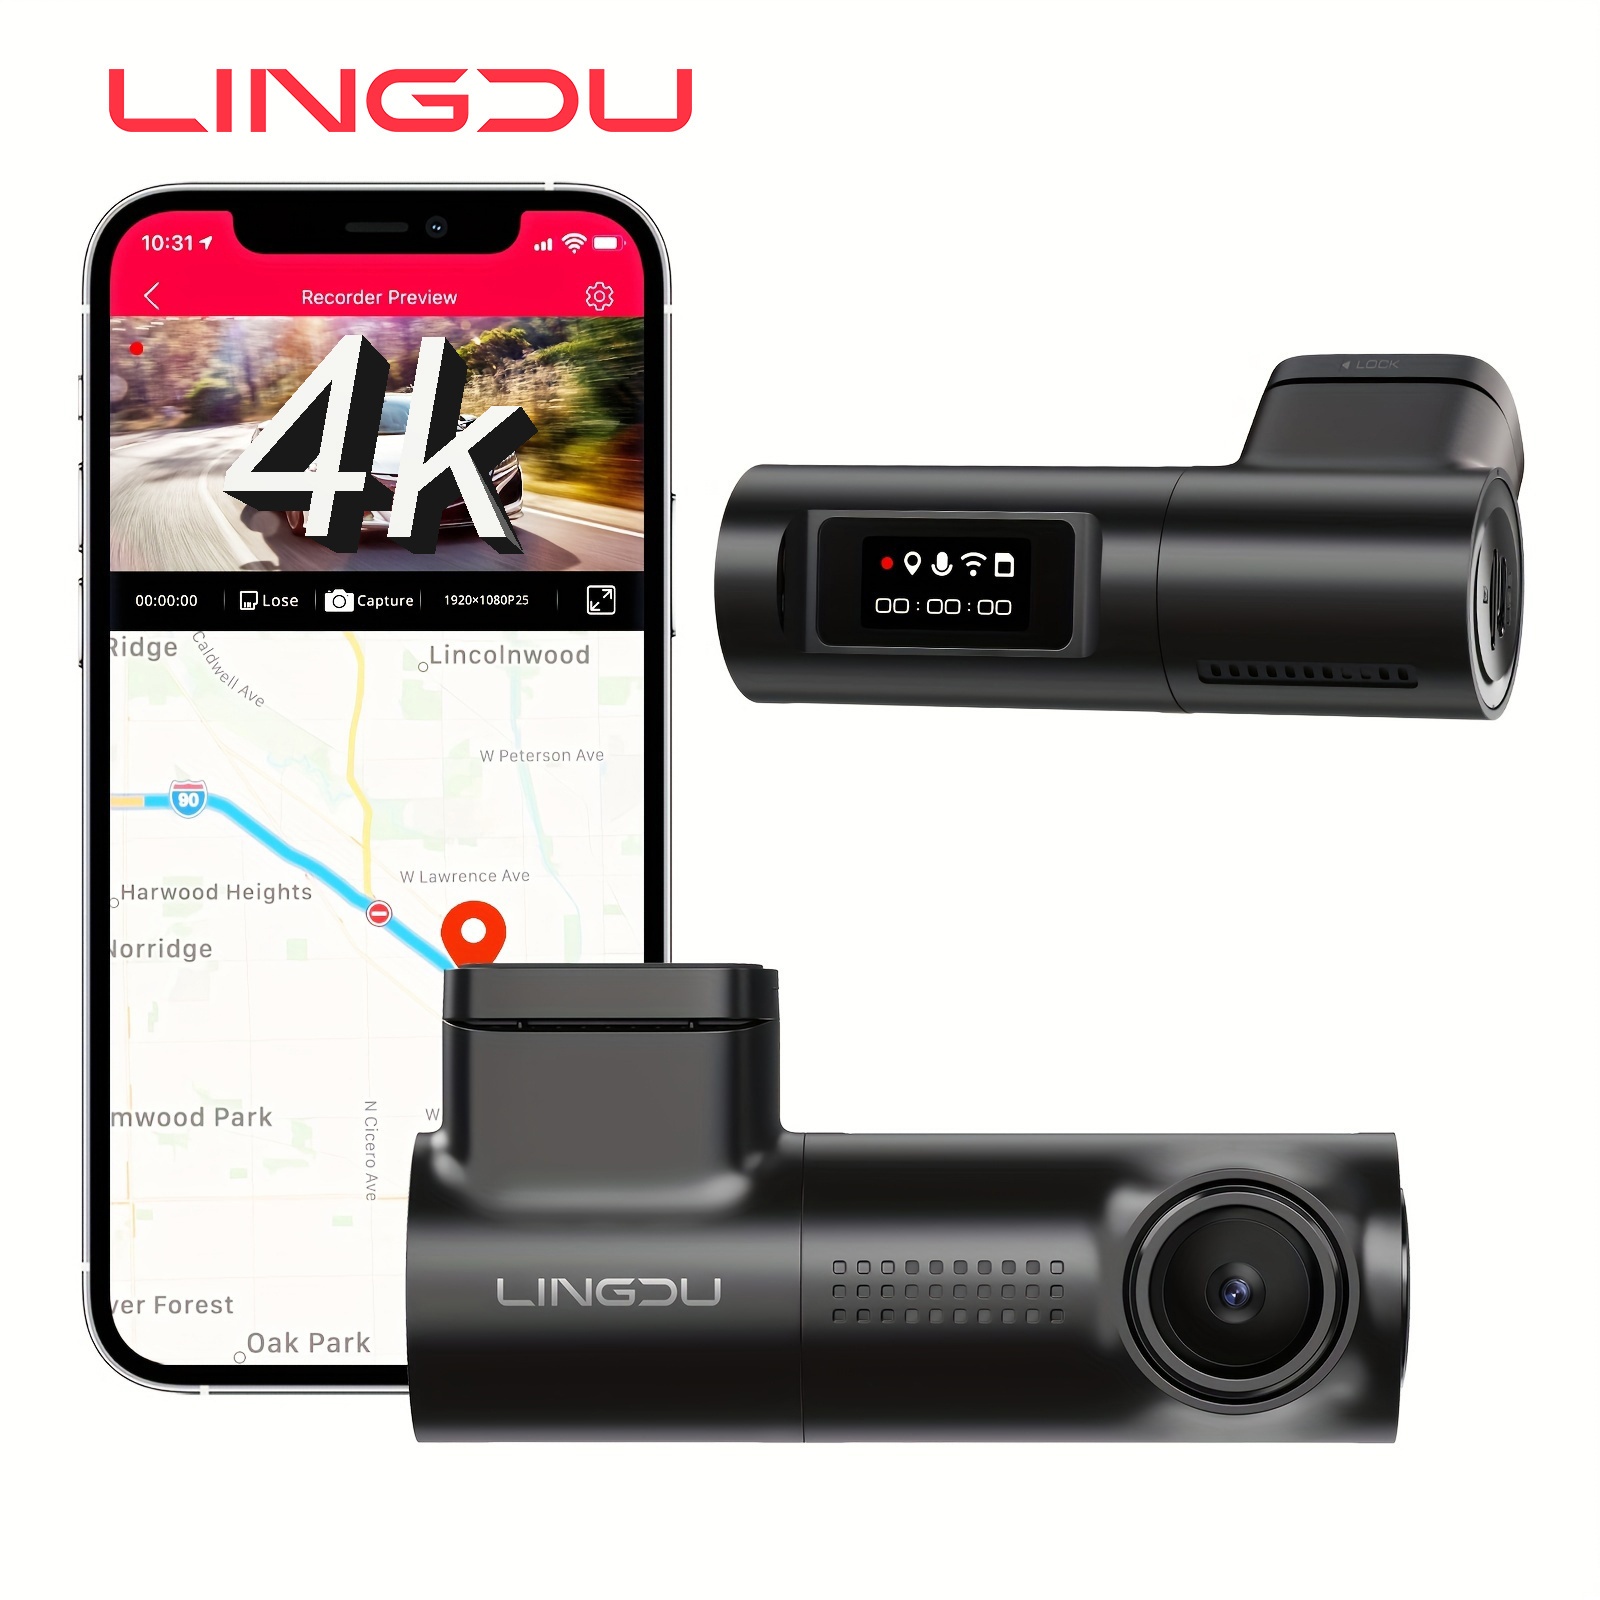 Caméra intelligent tableau de bord de voiture 2.2 pouces Dashcam